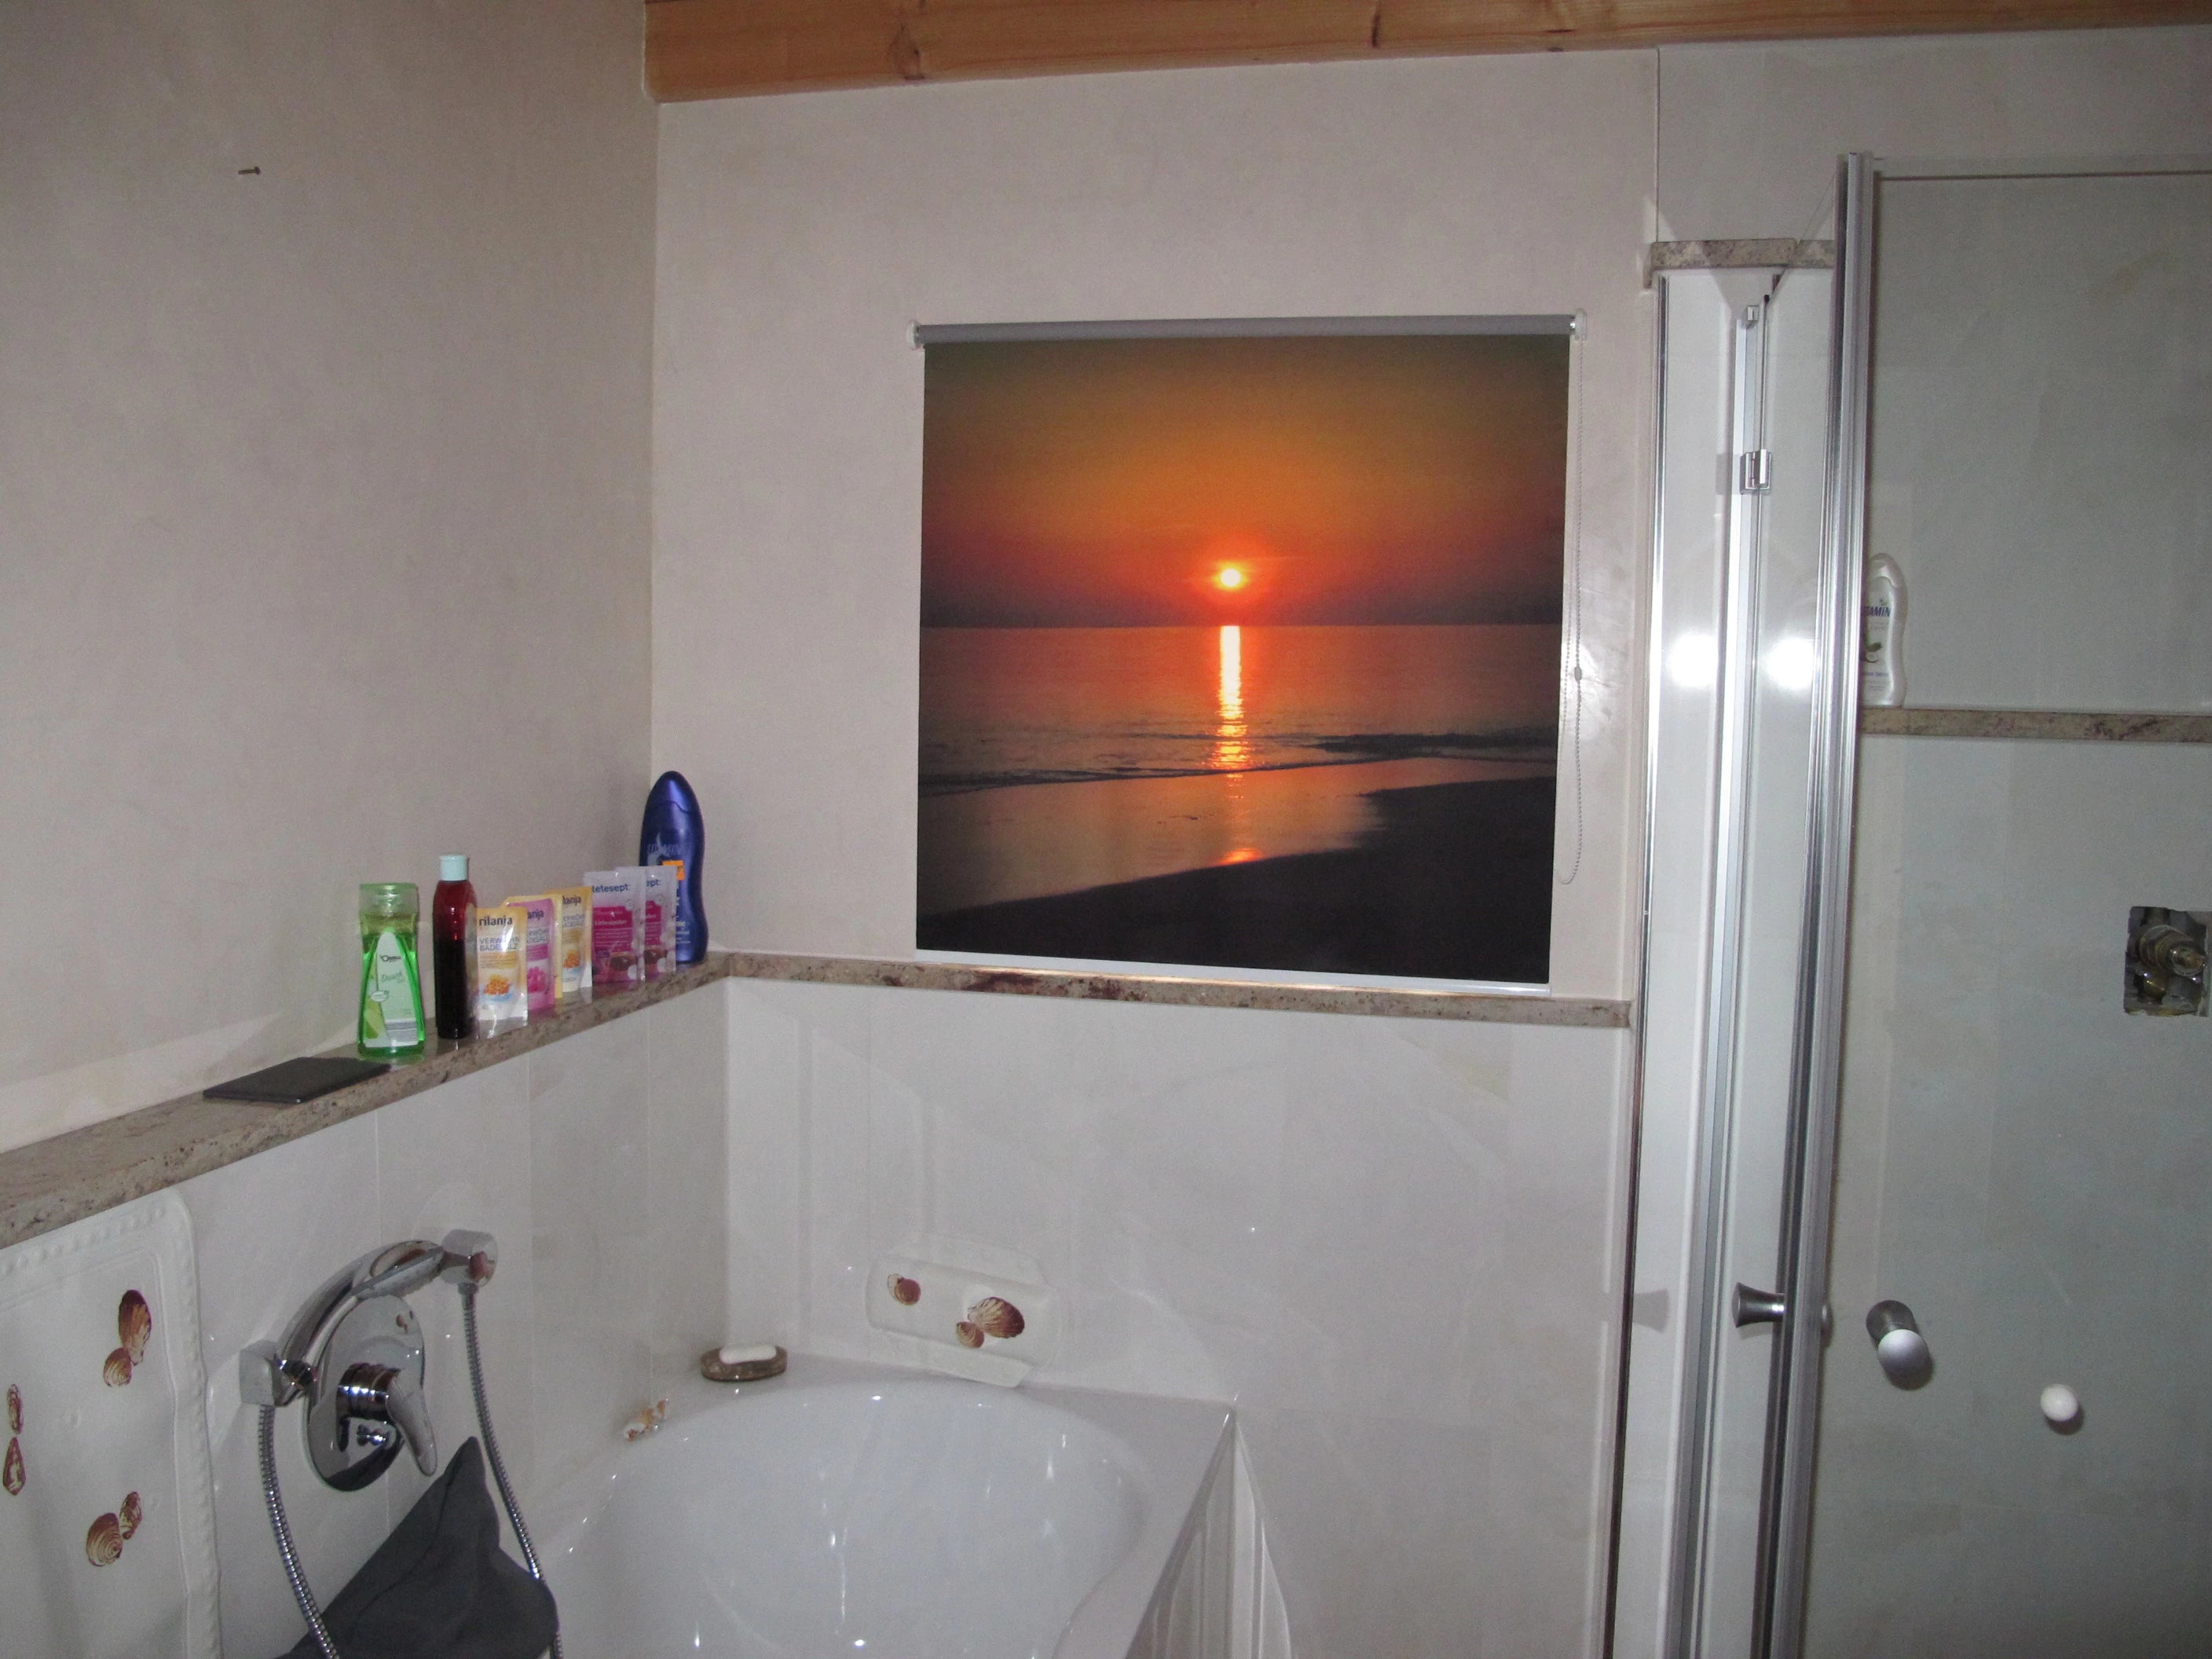 bedrucktes Fotorollo im Badezimmer am Fenster mit Bild vom Sonnenuntergang am Meer